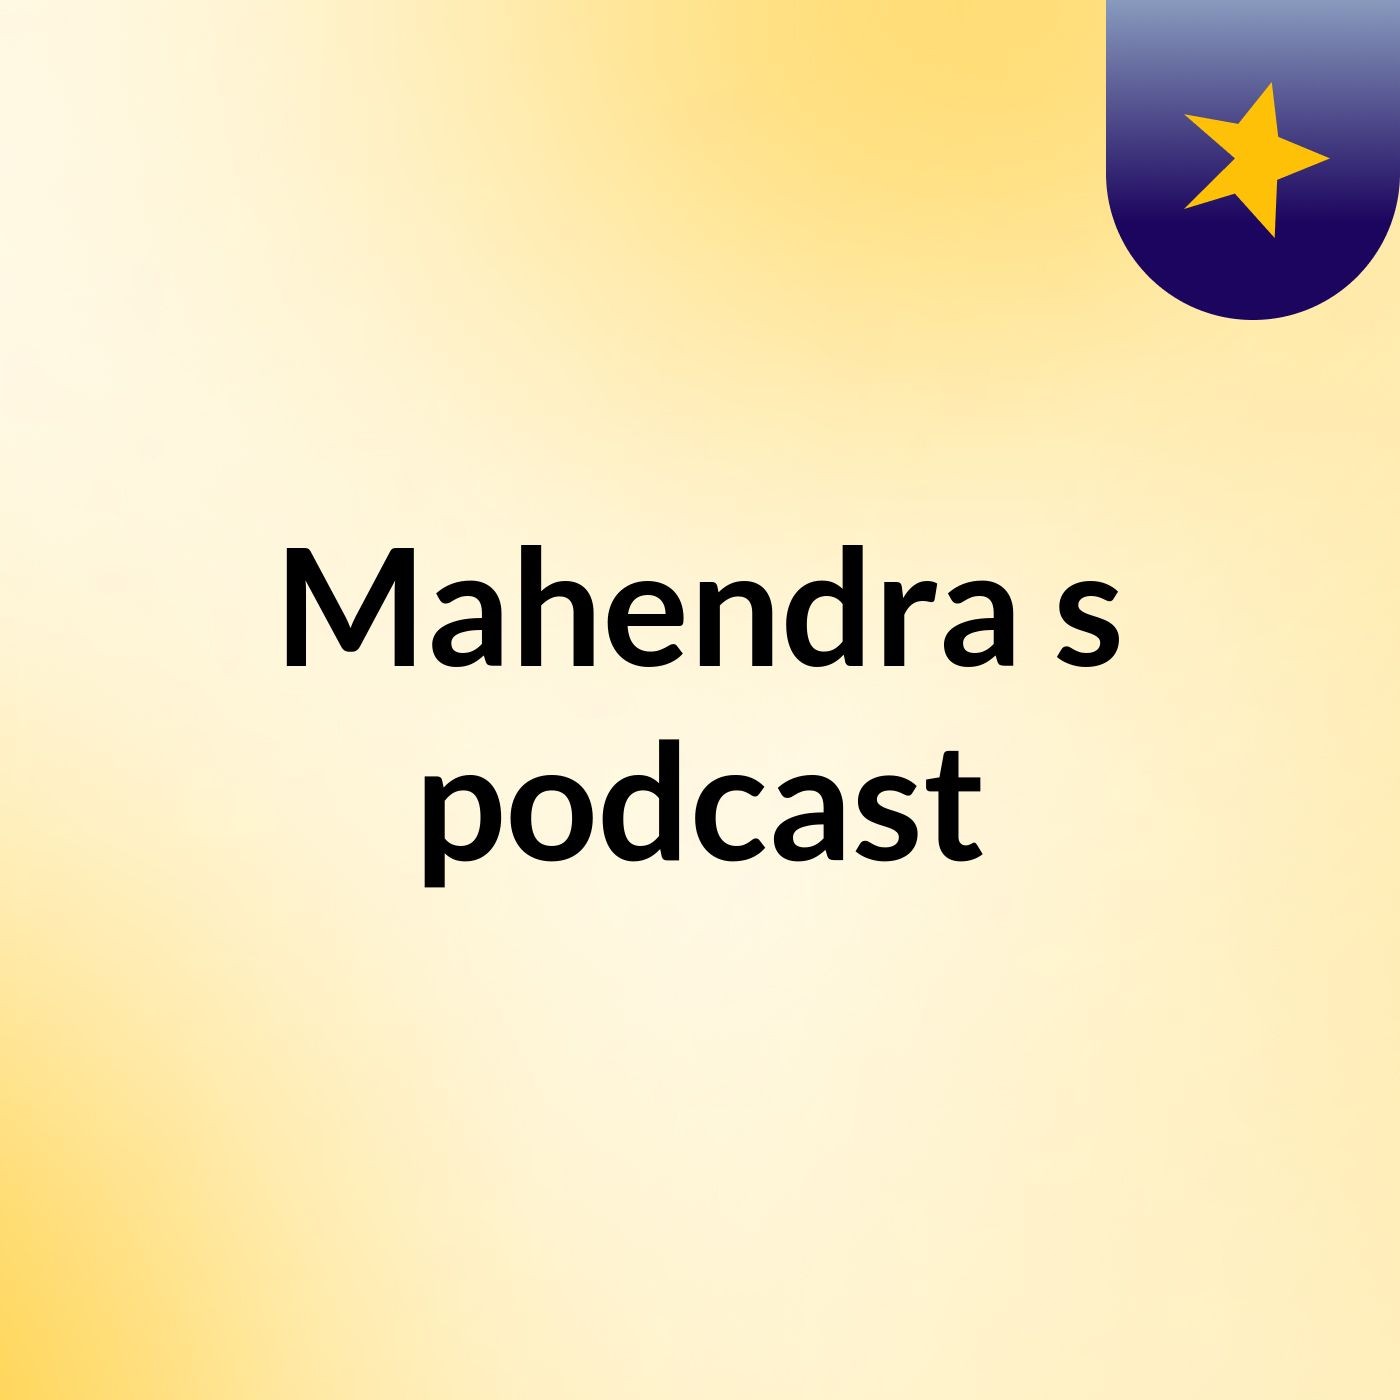 Mahendra's podcast